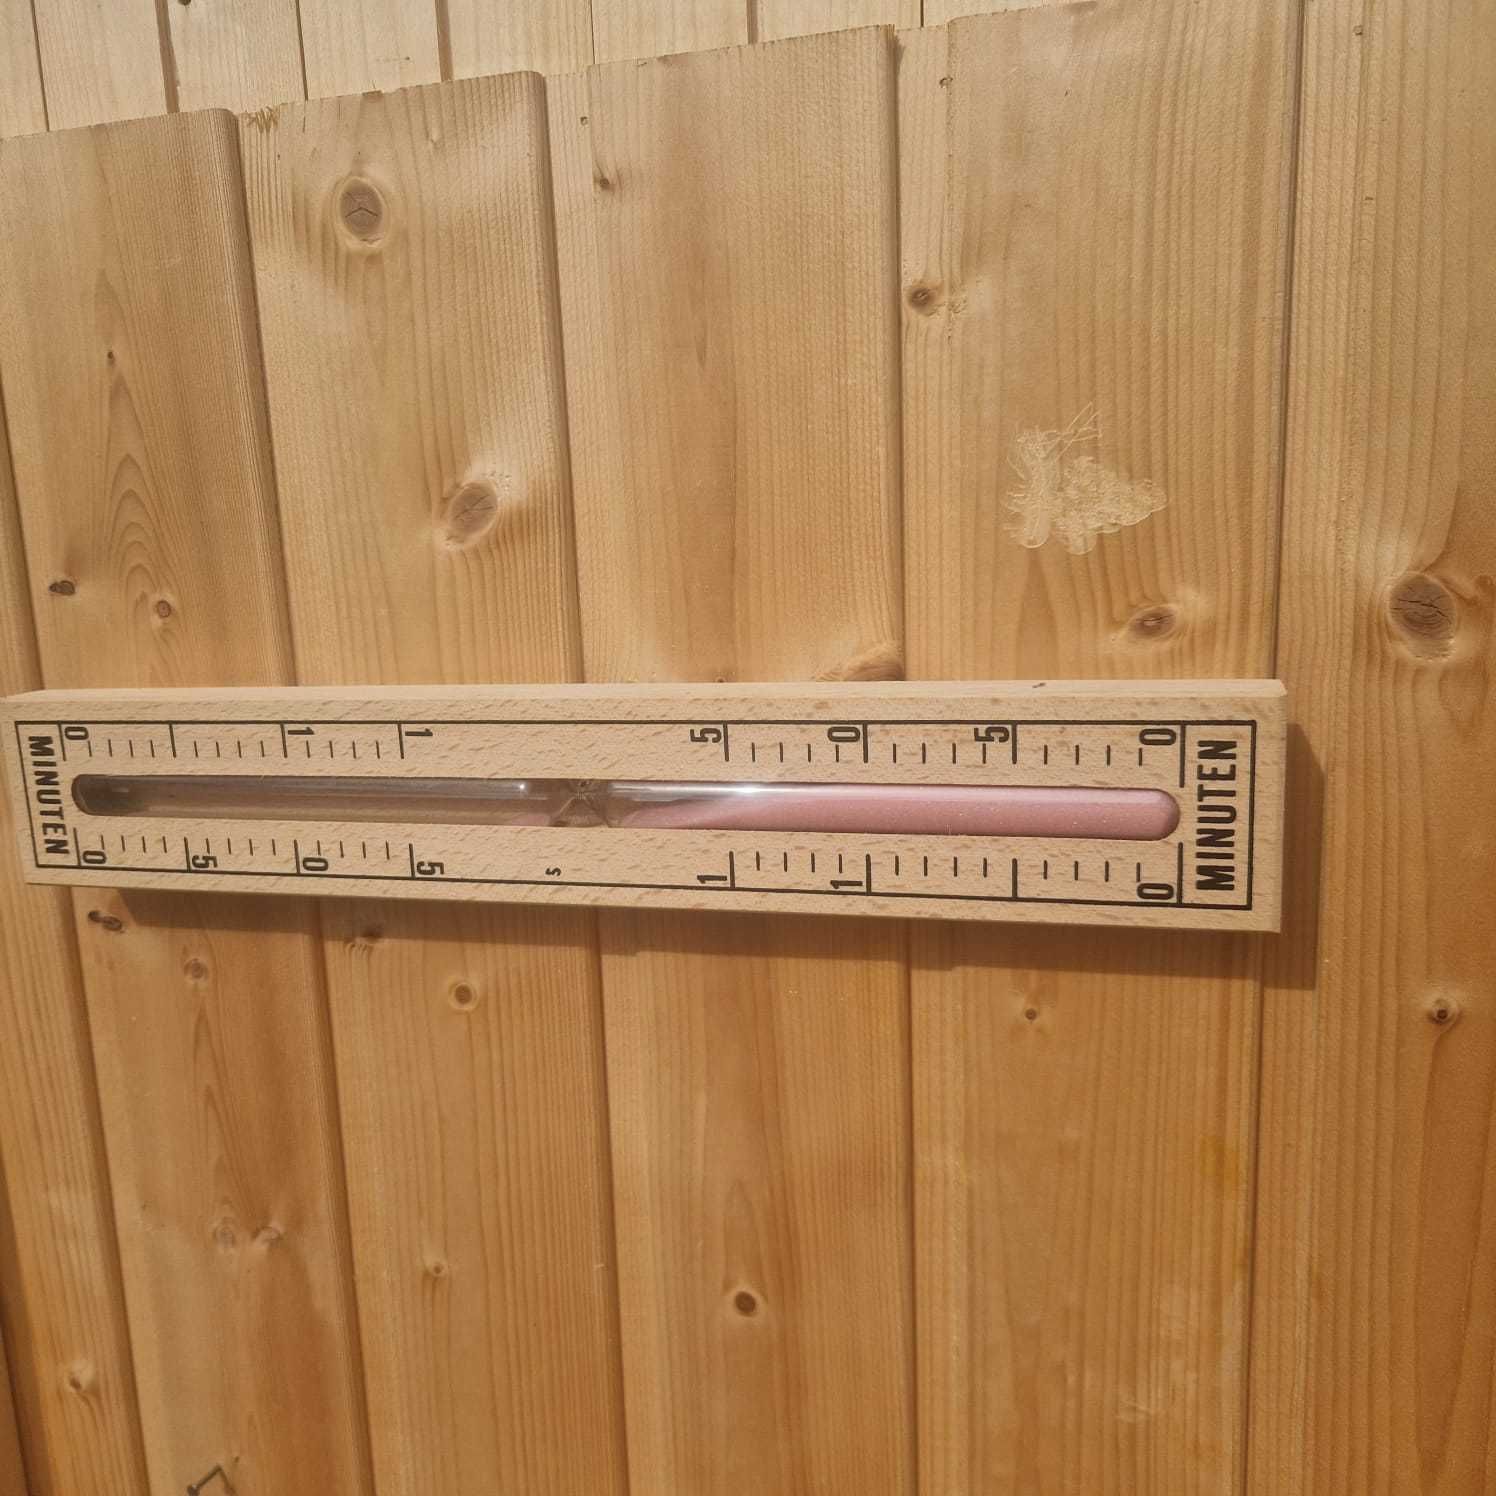 sauna kabina 1 2 osobowa 5 promienników regulacja temperatury czas